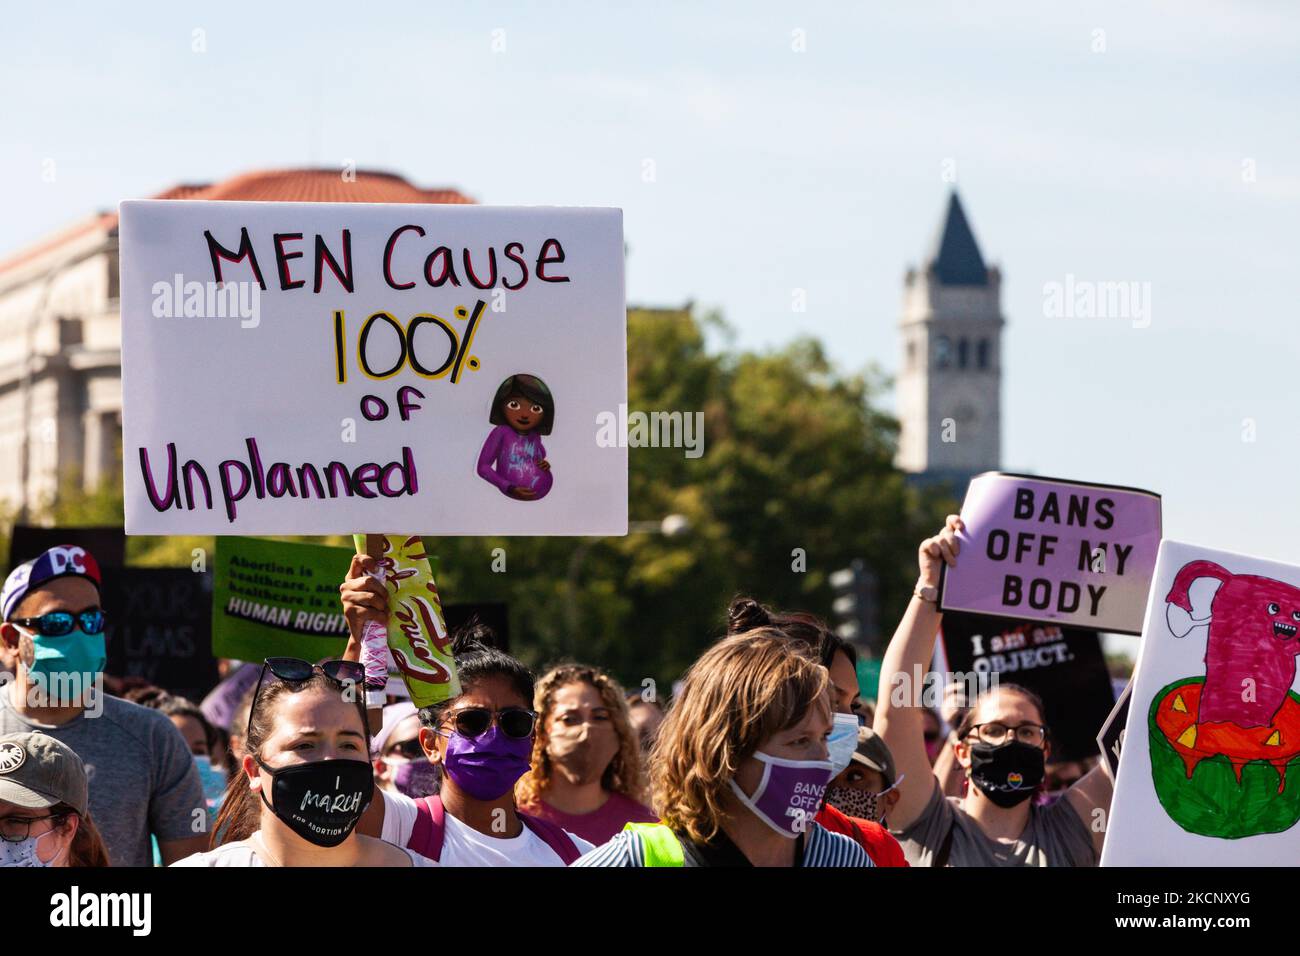 Les manifestants en route de Freedom Plaza à la Cour suprême des États-Unis lors de la Marche des femmes pour la justice pour l'avortement à Washington, DC. Les manifestants exigent que le gouvernement américain protège les droits génésiques des femmes et leur accès à l'avortement dans tout le pays. Plus précisément, ils demandent au Congrès d'adopter la loi sur la protection de la santé des femmes (WHPA) et CHAQUE loi, qui garantissent l'accès à l'avortement et exigent qu'il soit couvert par une assurance. Plus de 600 manifestations satellites ont lieu à 2 octobre dans tout le pays. Les événements sont en partie en réponse aux lois restrictives anti-avortement récemment adoptées au Texas et au Mississippi, an Banque D'Images